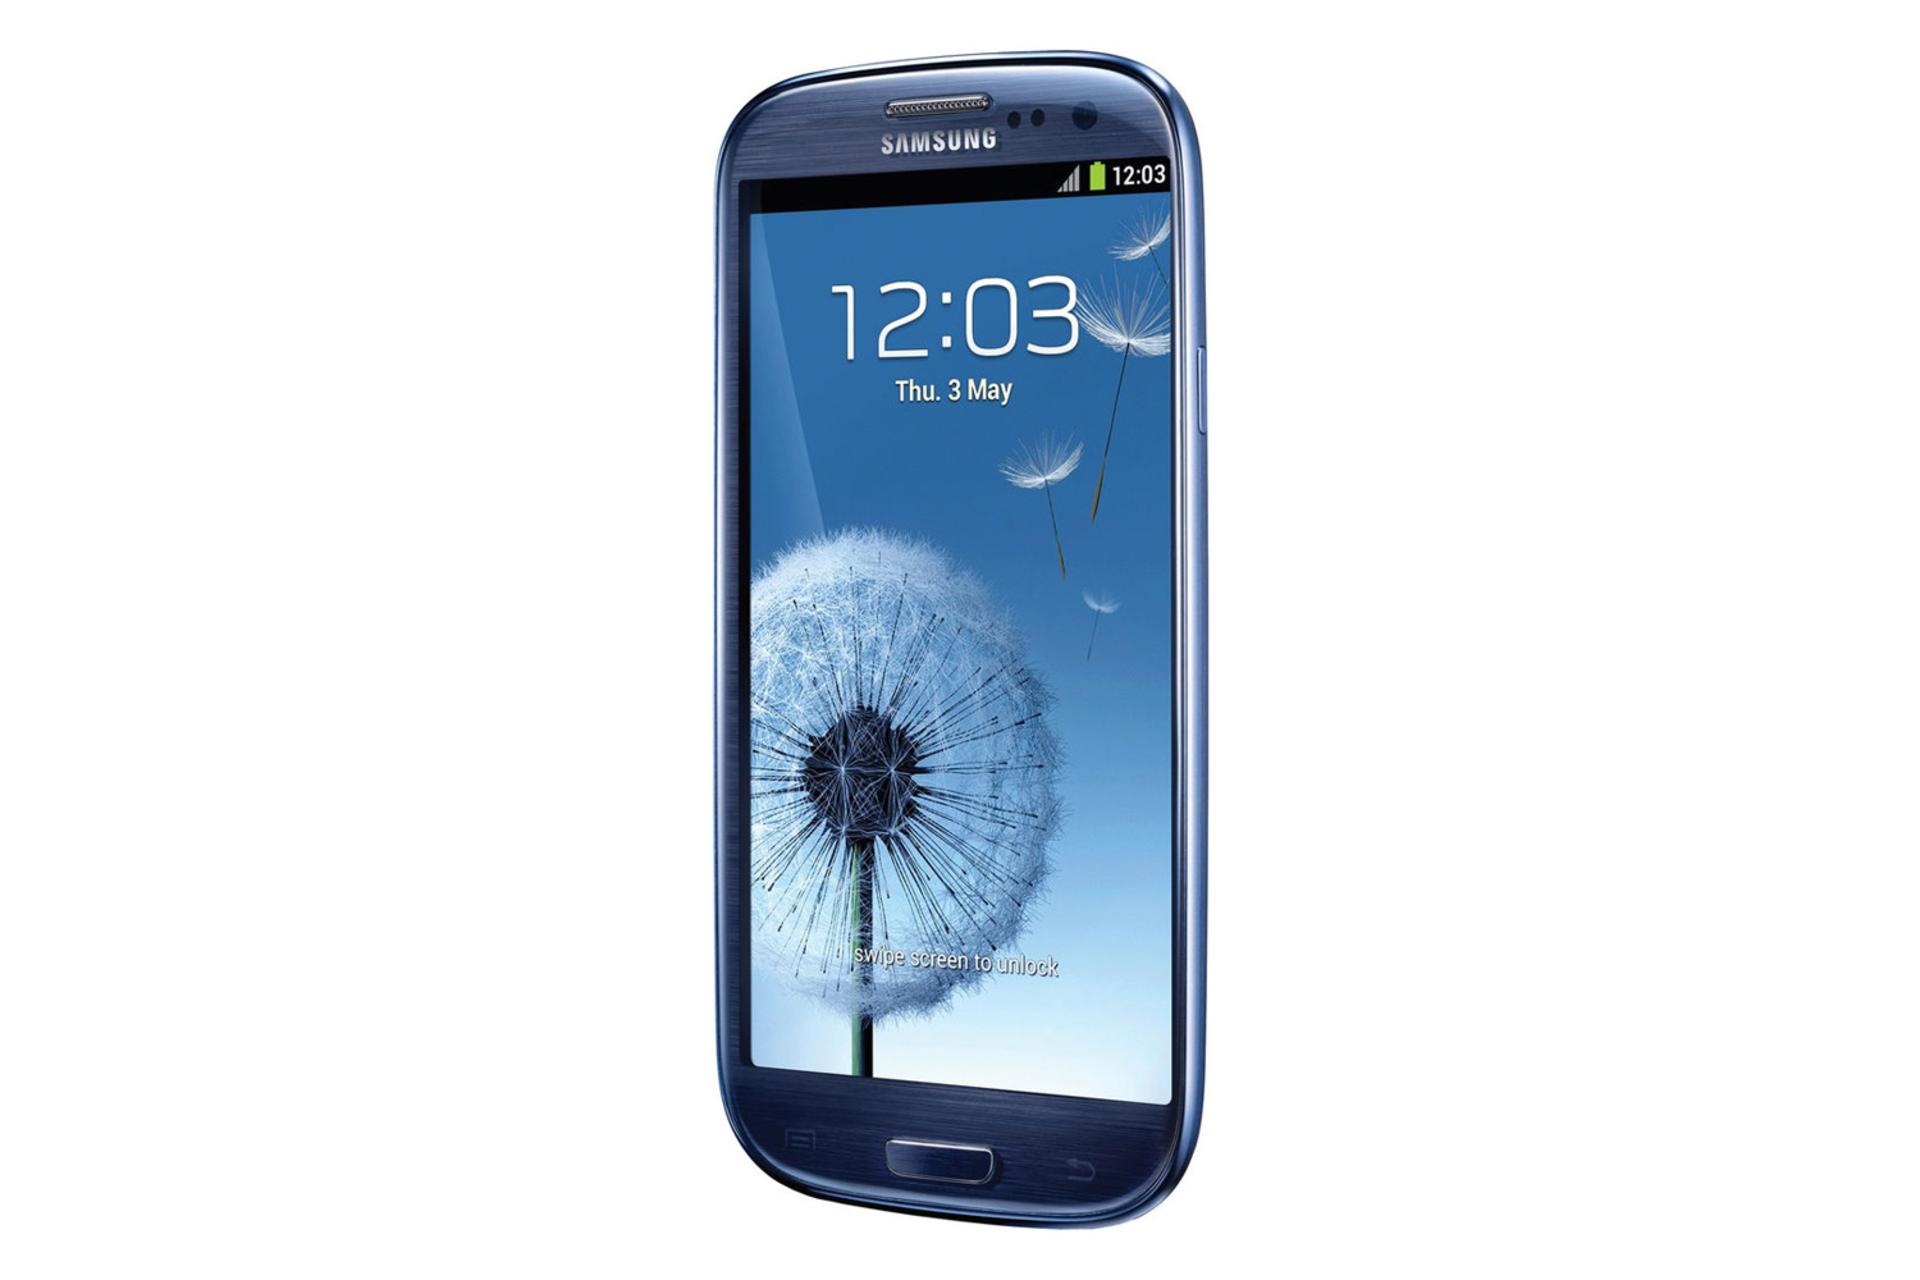 نمایشگر گلکسی اس 3 نئو I9300I سامسونگ Samsung I9300I Galaxy S3 Neo